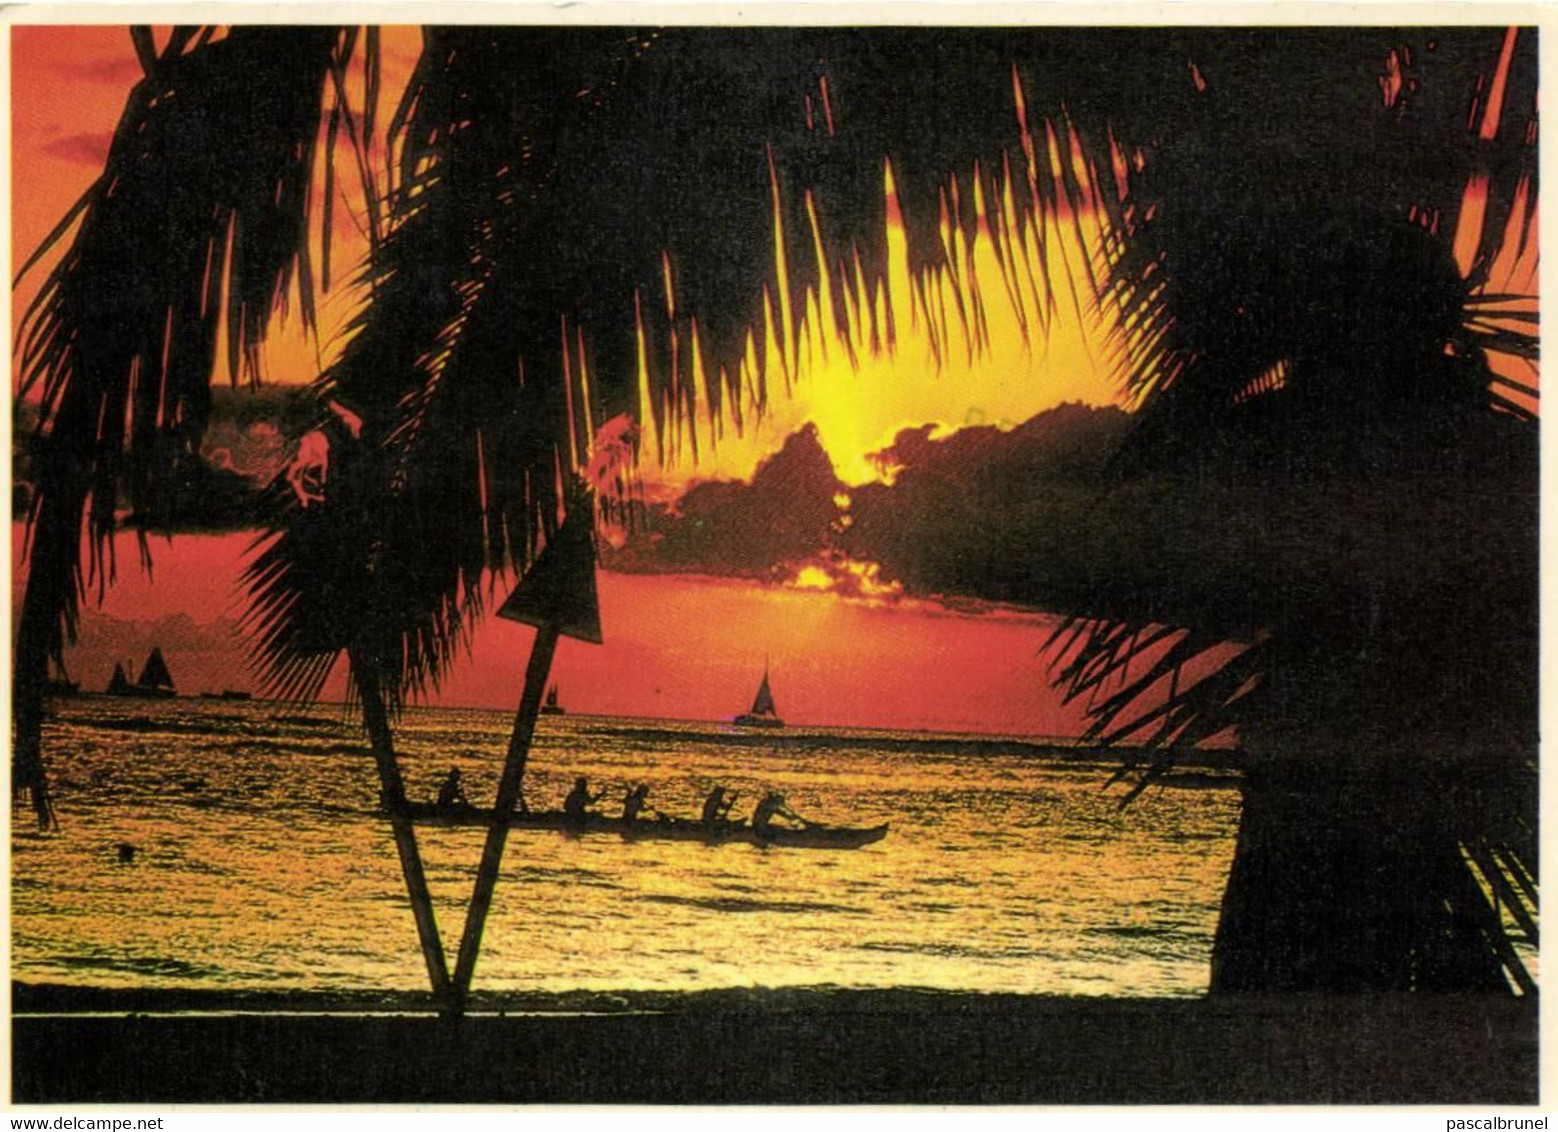 HONOLULU - ANOTHER BEAUTIFUL SUNSET OFF OF WAIKIKI BEACH - Honolulu